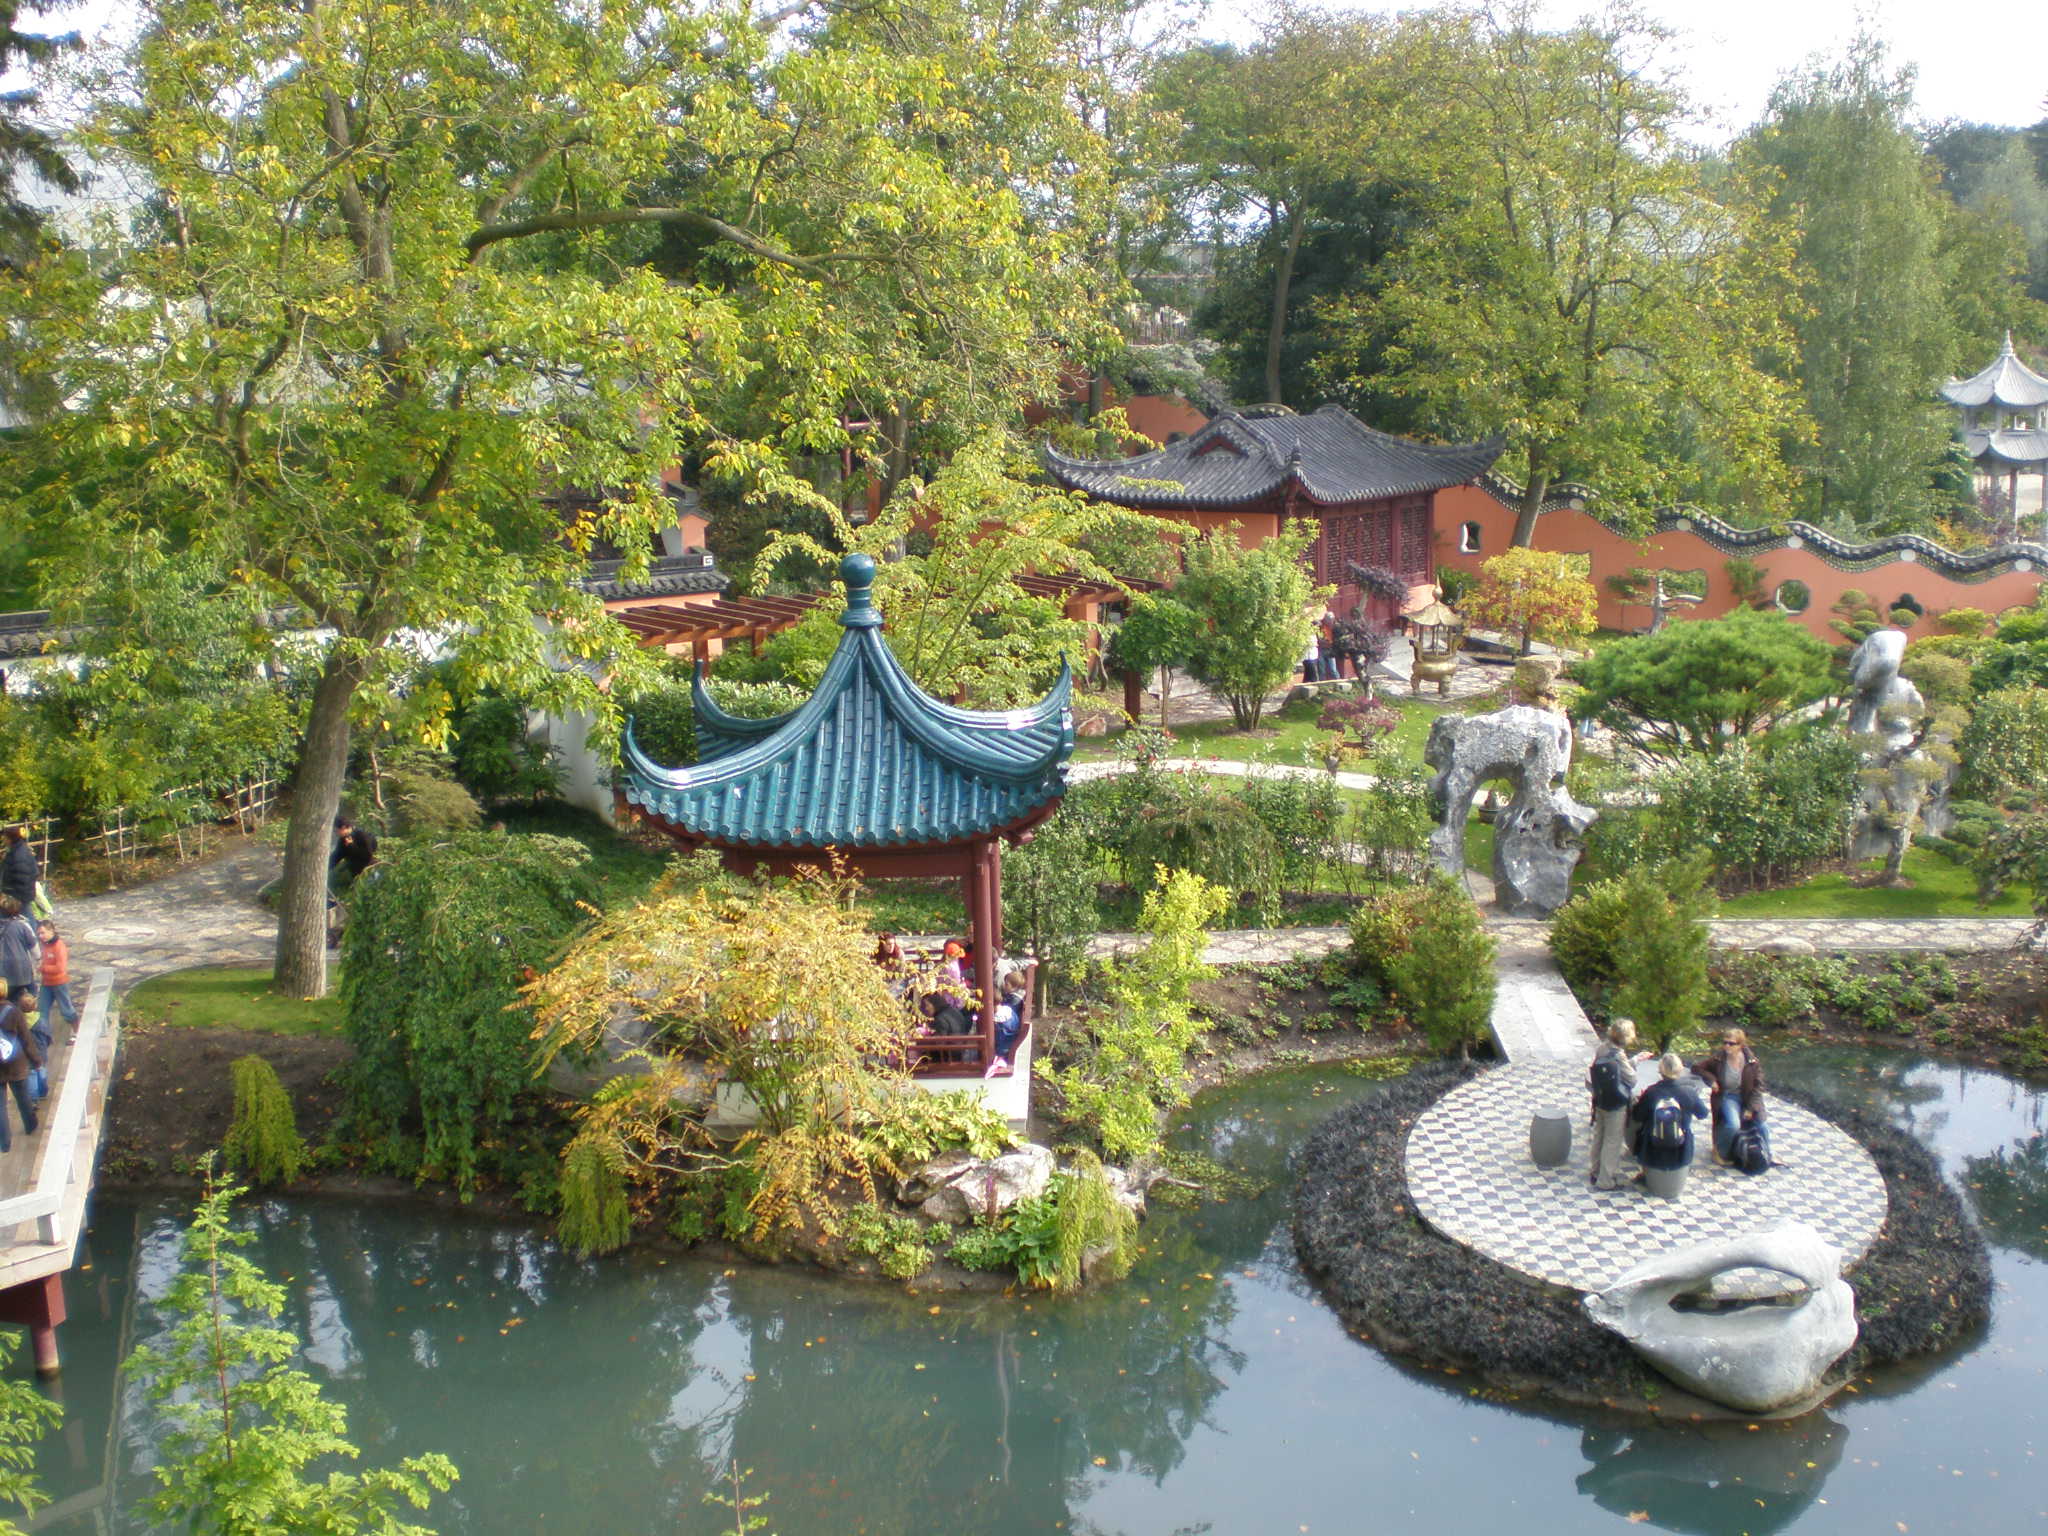 https://upload.wikimedia.org/wikipedia/commons/0/08/Pardisio_jardin_chinois1.JPG